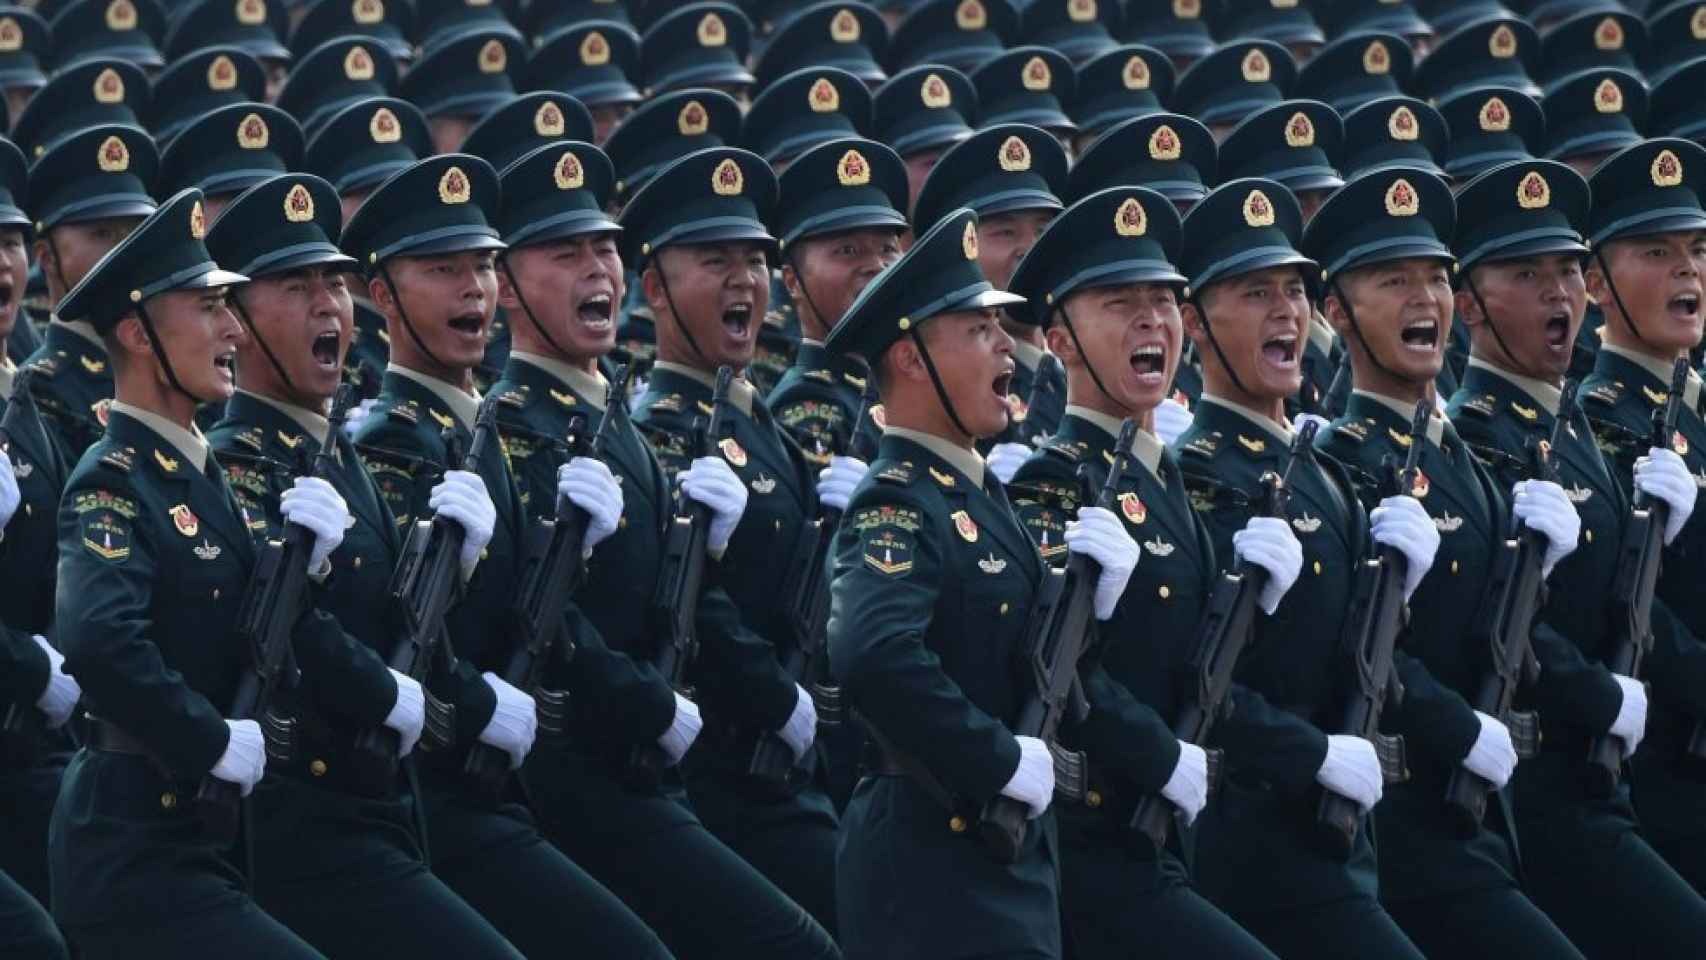 eeuu alerta: ejército de china es más agresivo y peligroso y podría invadir et aiwan en 2027